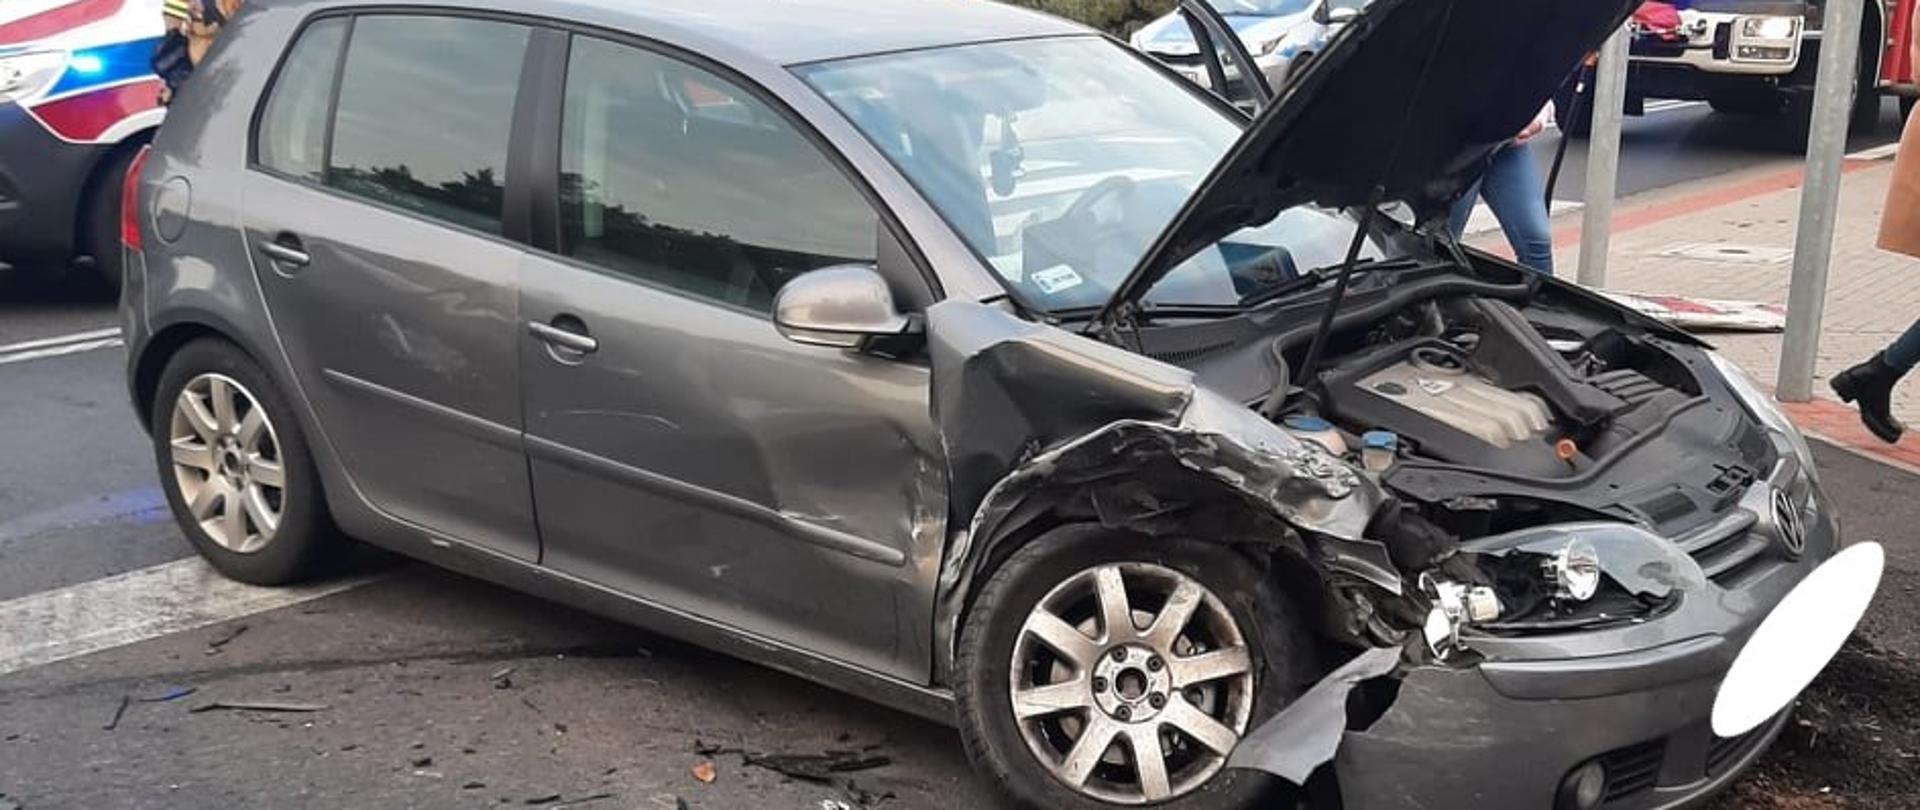 Zdjęcie przedstawia rozbity samochód marki VW Golf na tle karetki pogotowia, radiowozu policyjnego i samochodu pożarniczego.